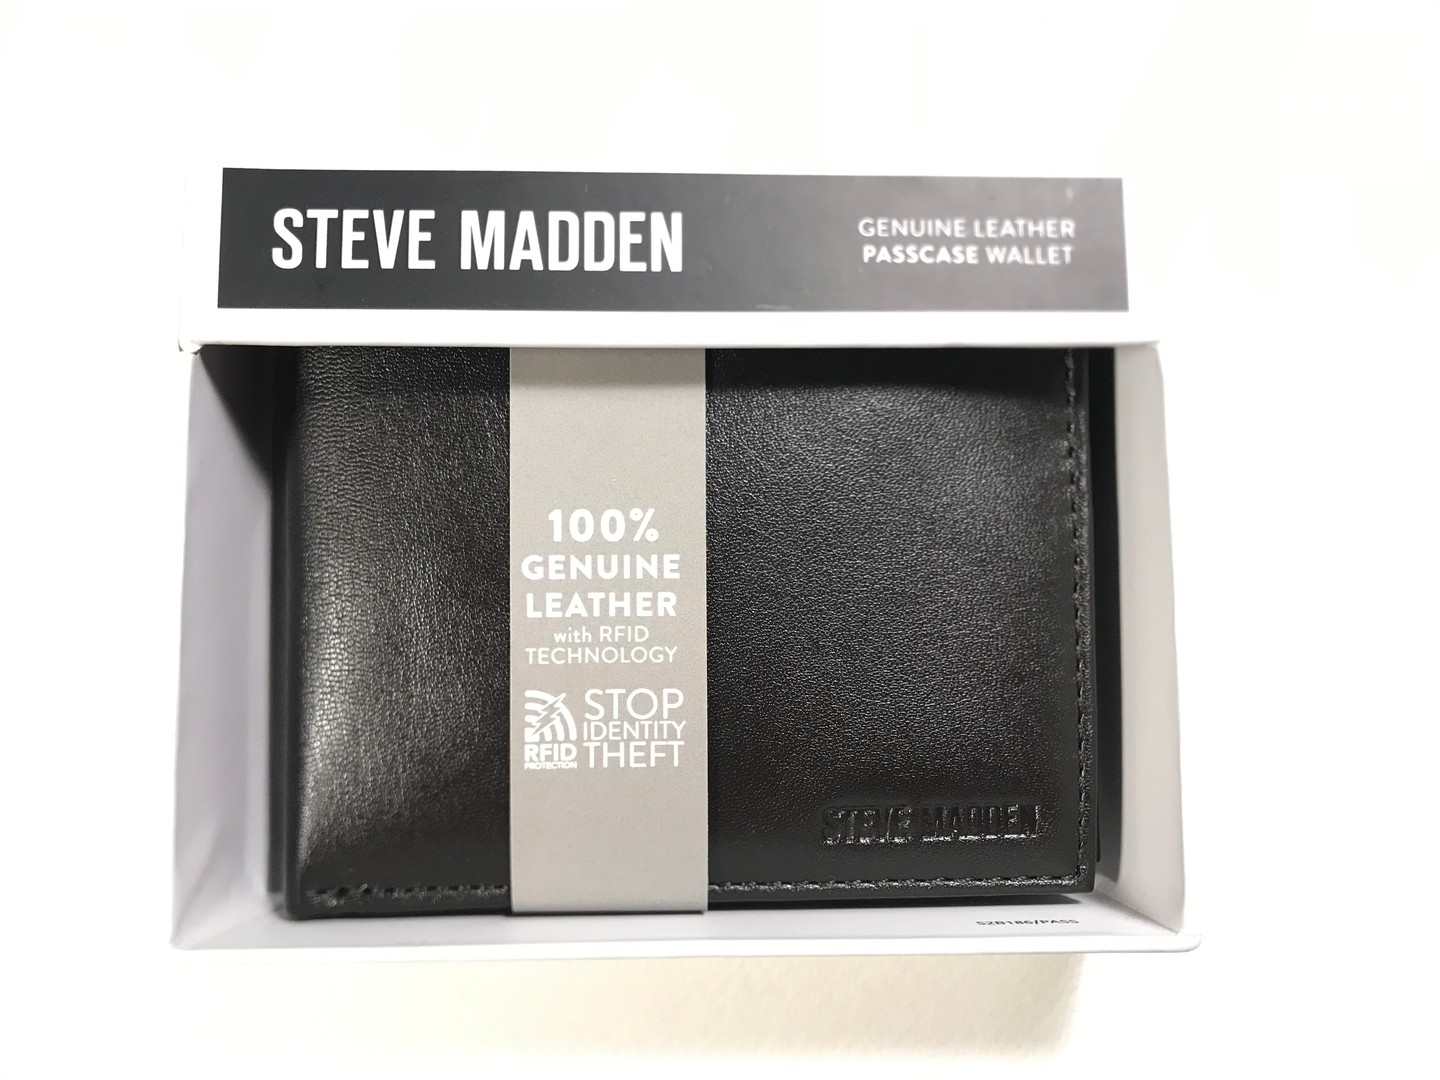 carteras y maletas - Billetera Steve Madden de cuero genuino con tecnología bloqueo RFID.